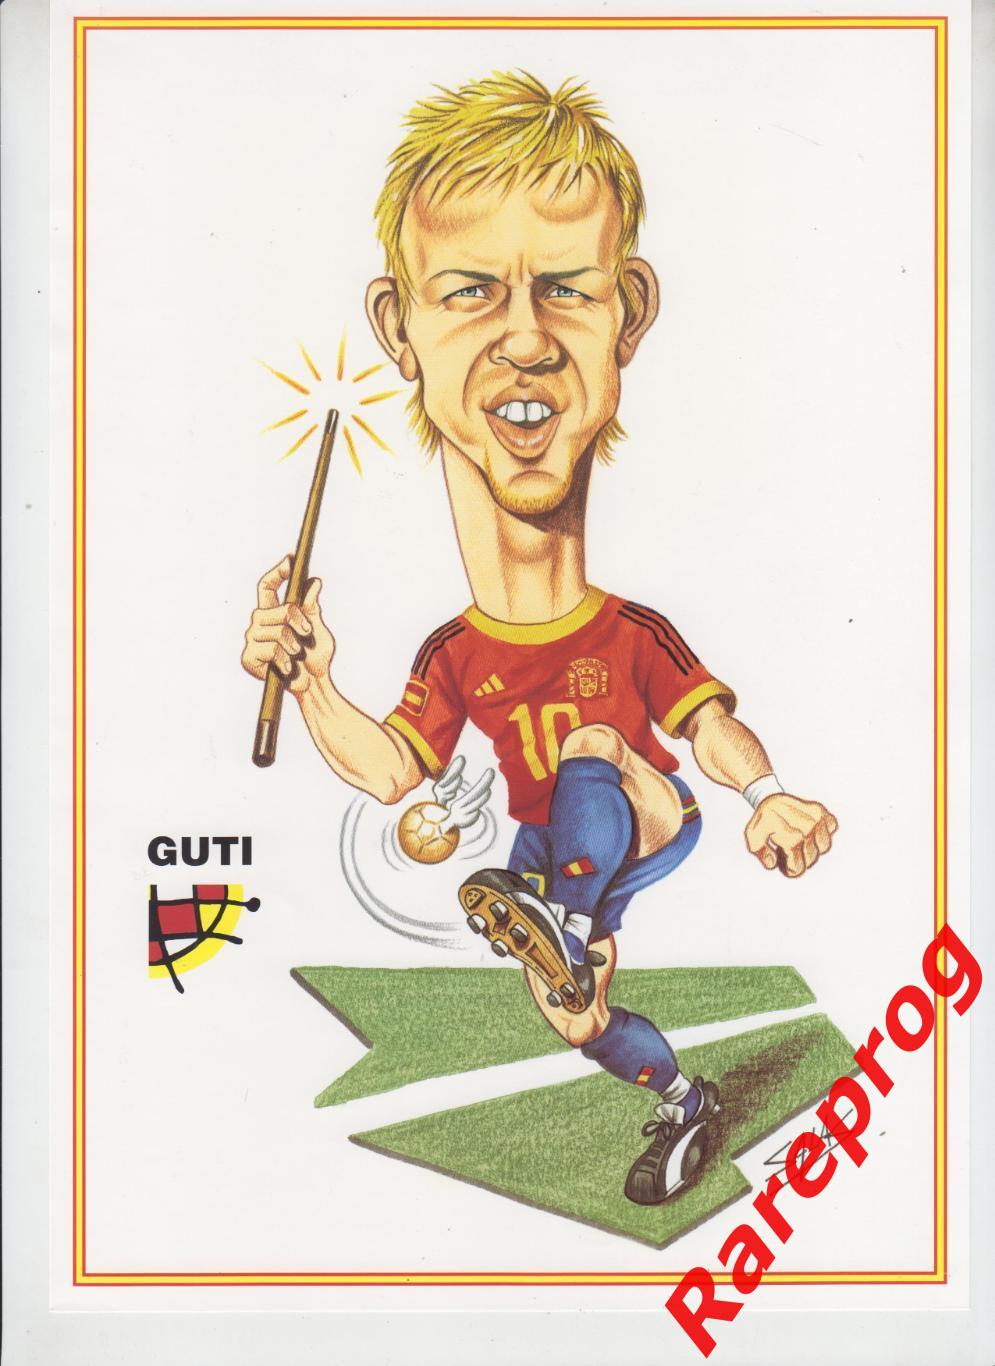 журнал Футбол RFEF Испания № 47 декабрь 2002 - Гути история 1